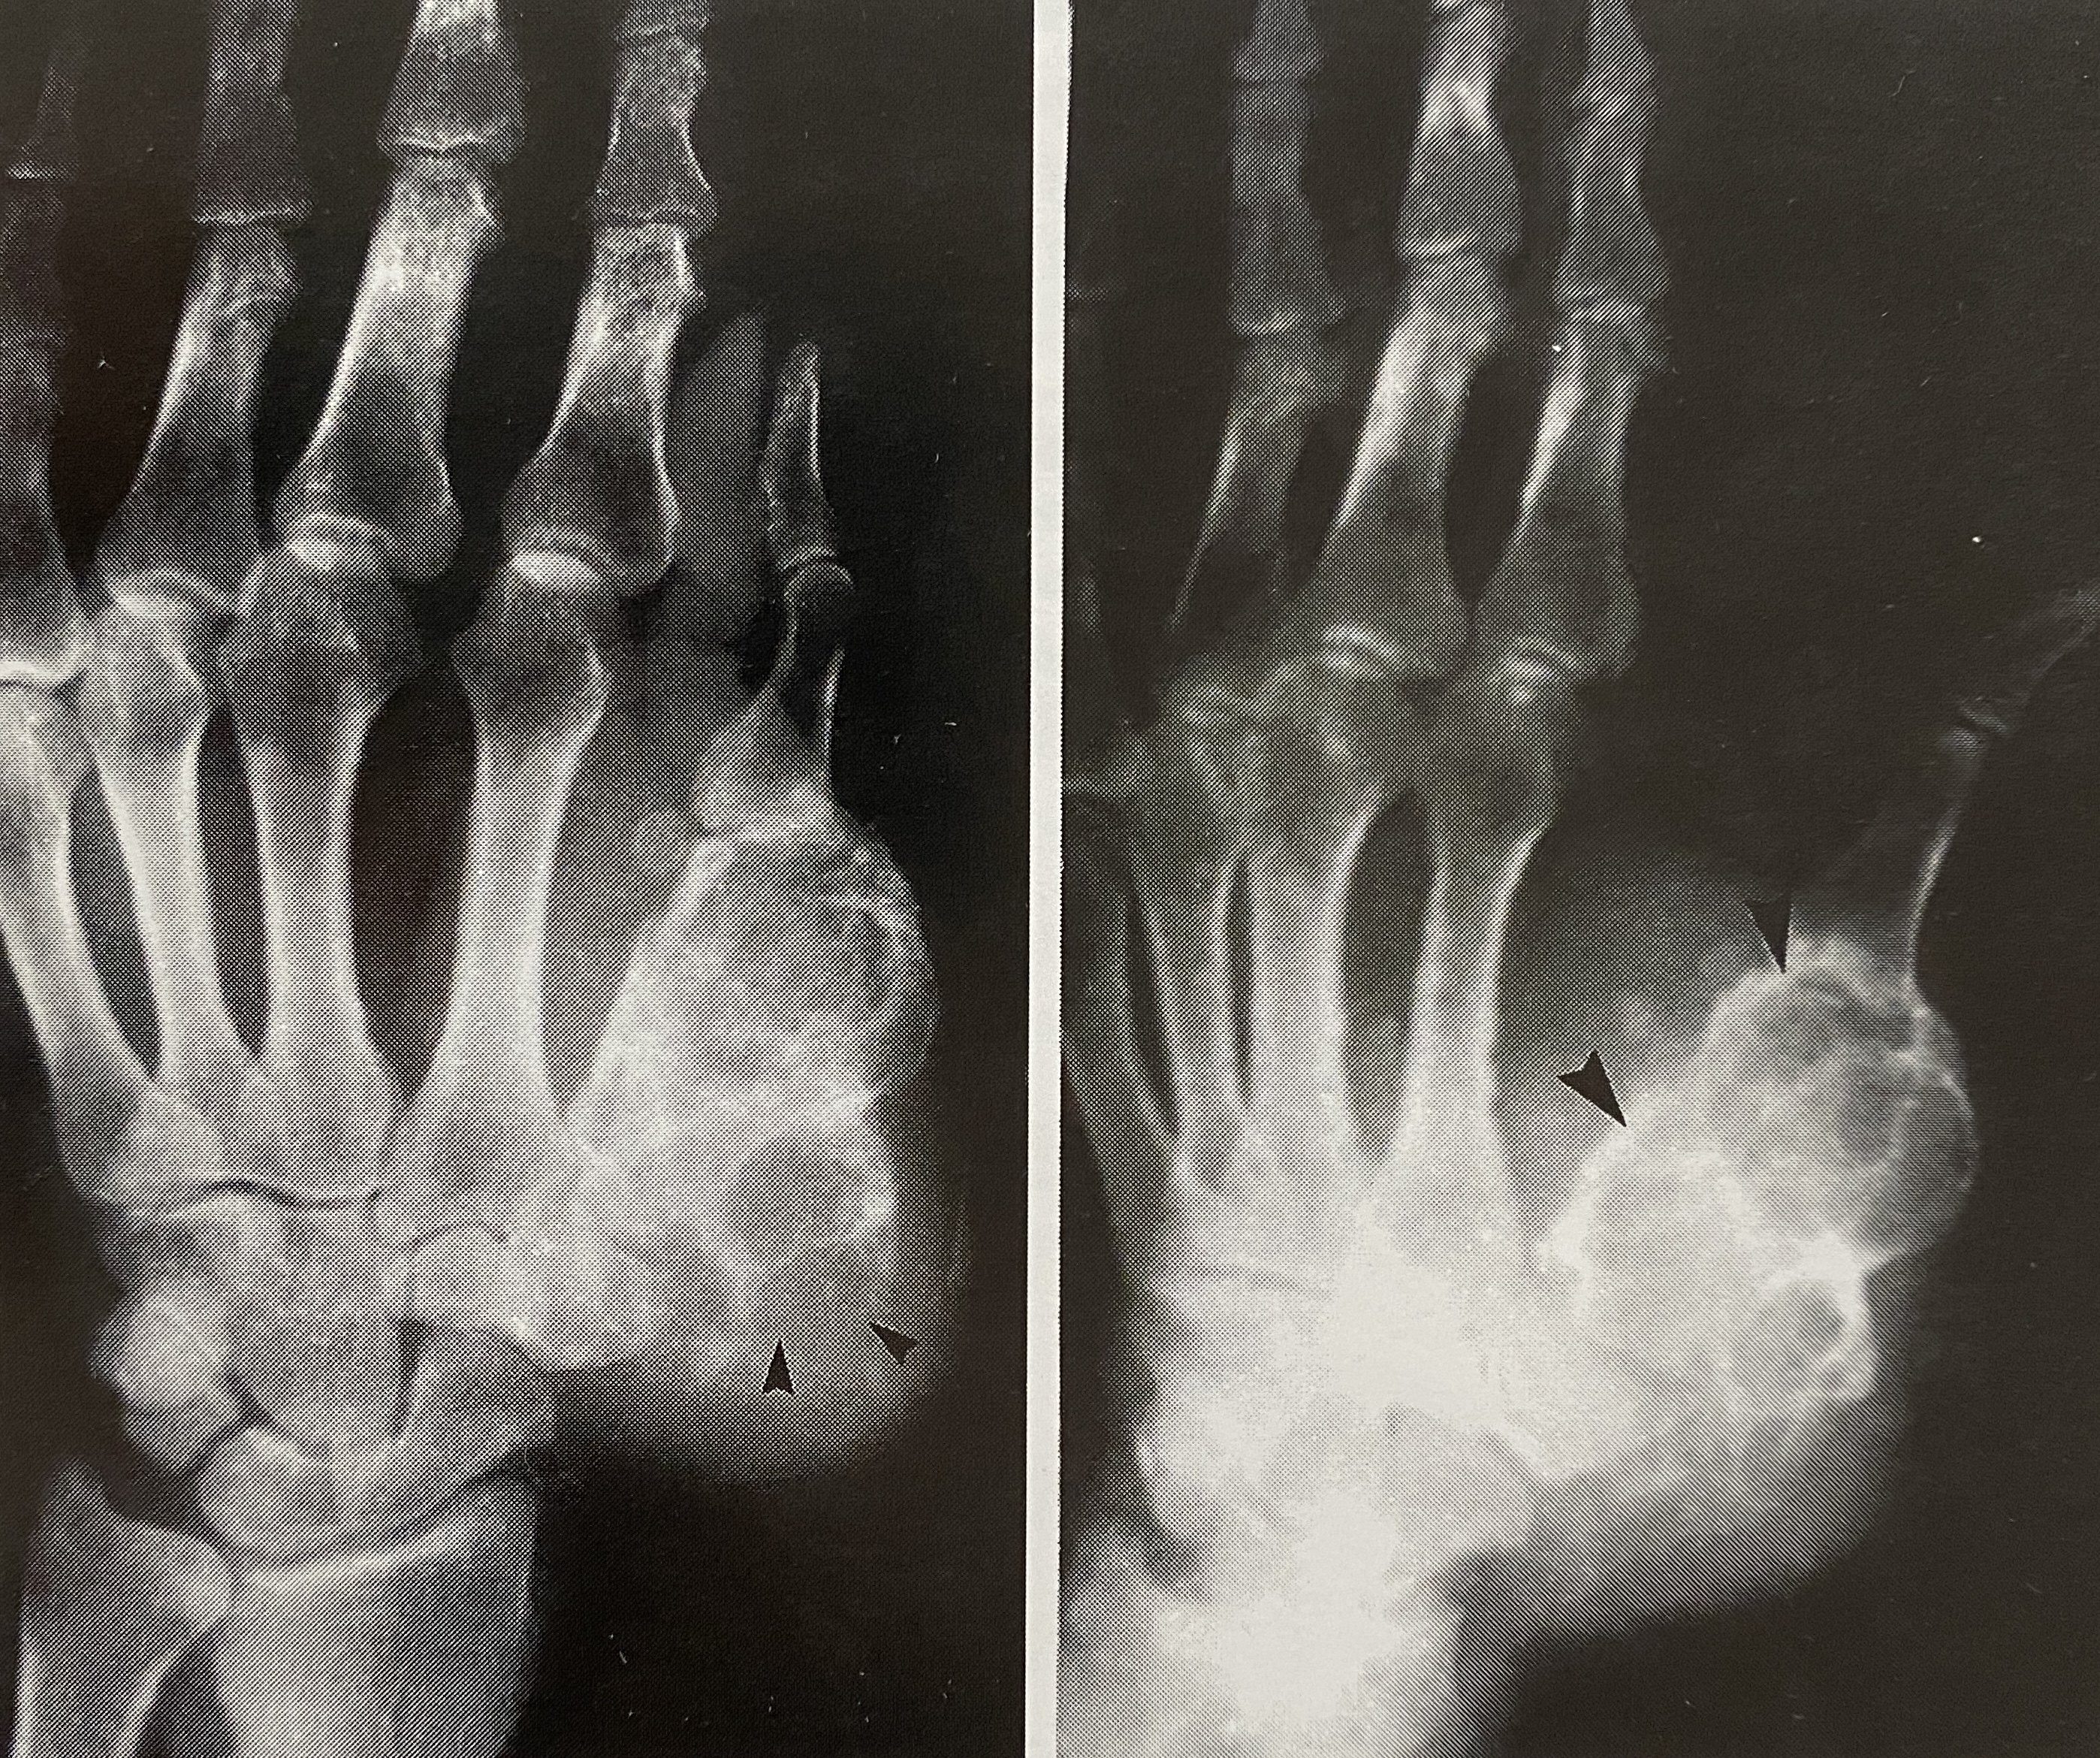 软骨黏液样纤维瘤x线平片示左手拇指第1掌骨多囊状膨胀性骨破坏,破坏